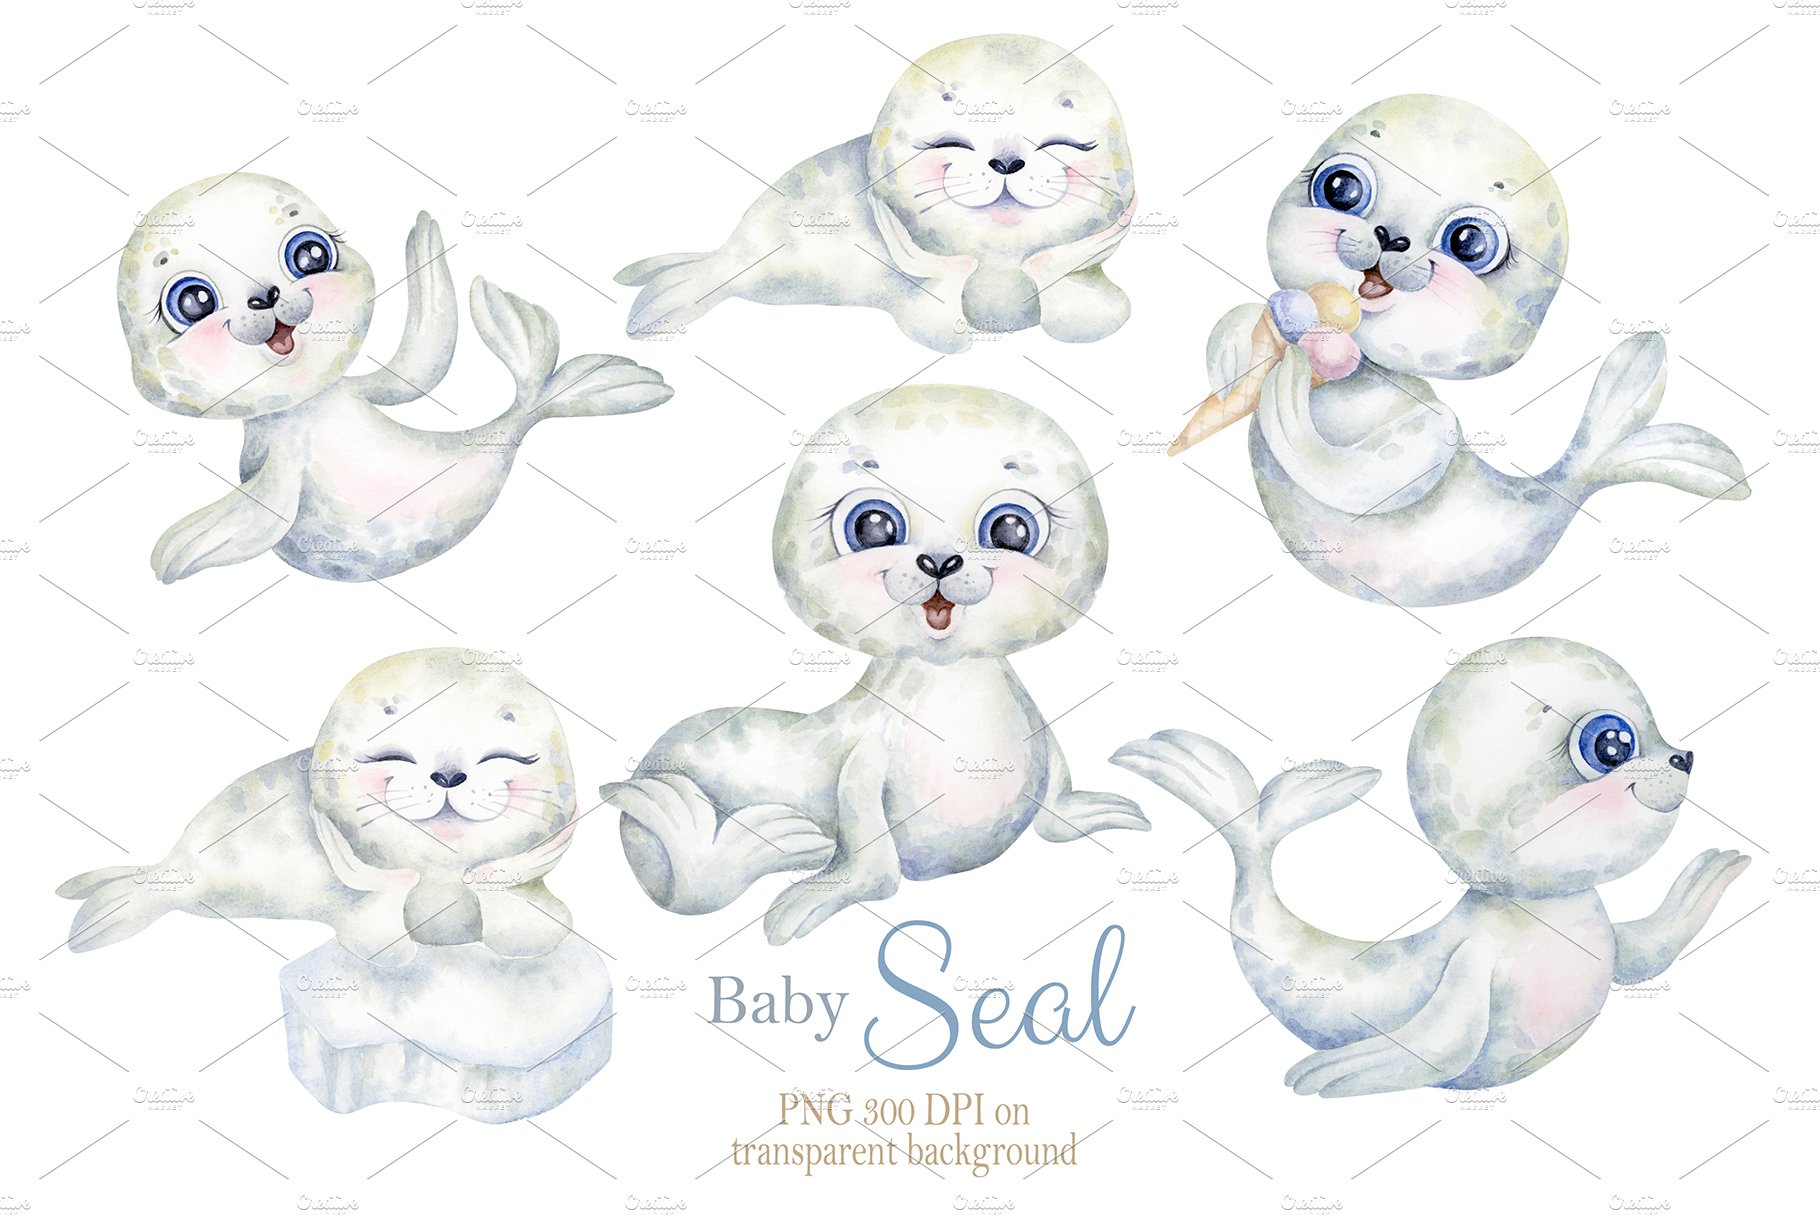 Diverse of seals babies mood.